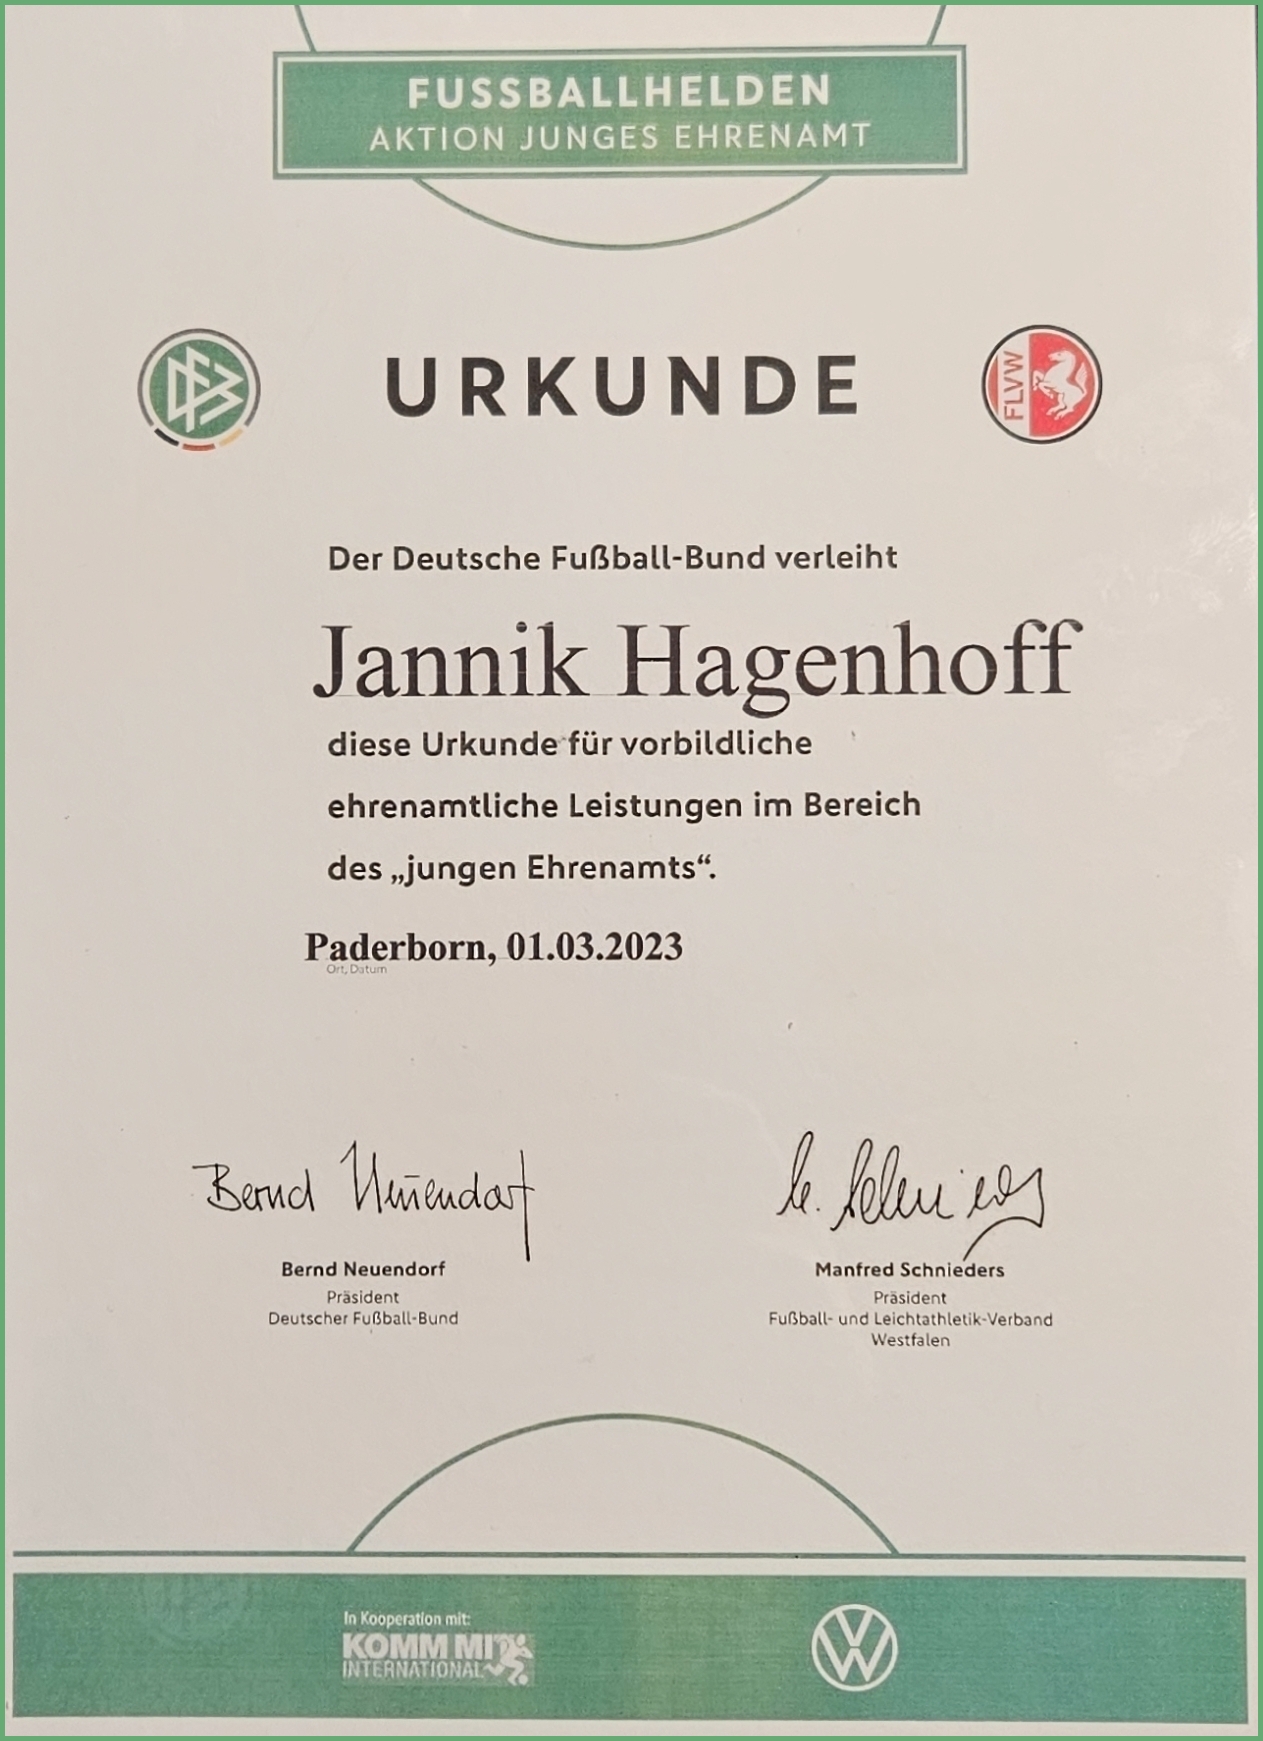 Die DFB-Urkunde als Dankeschön für Jannik Hagenhoff